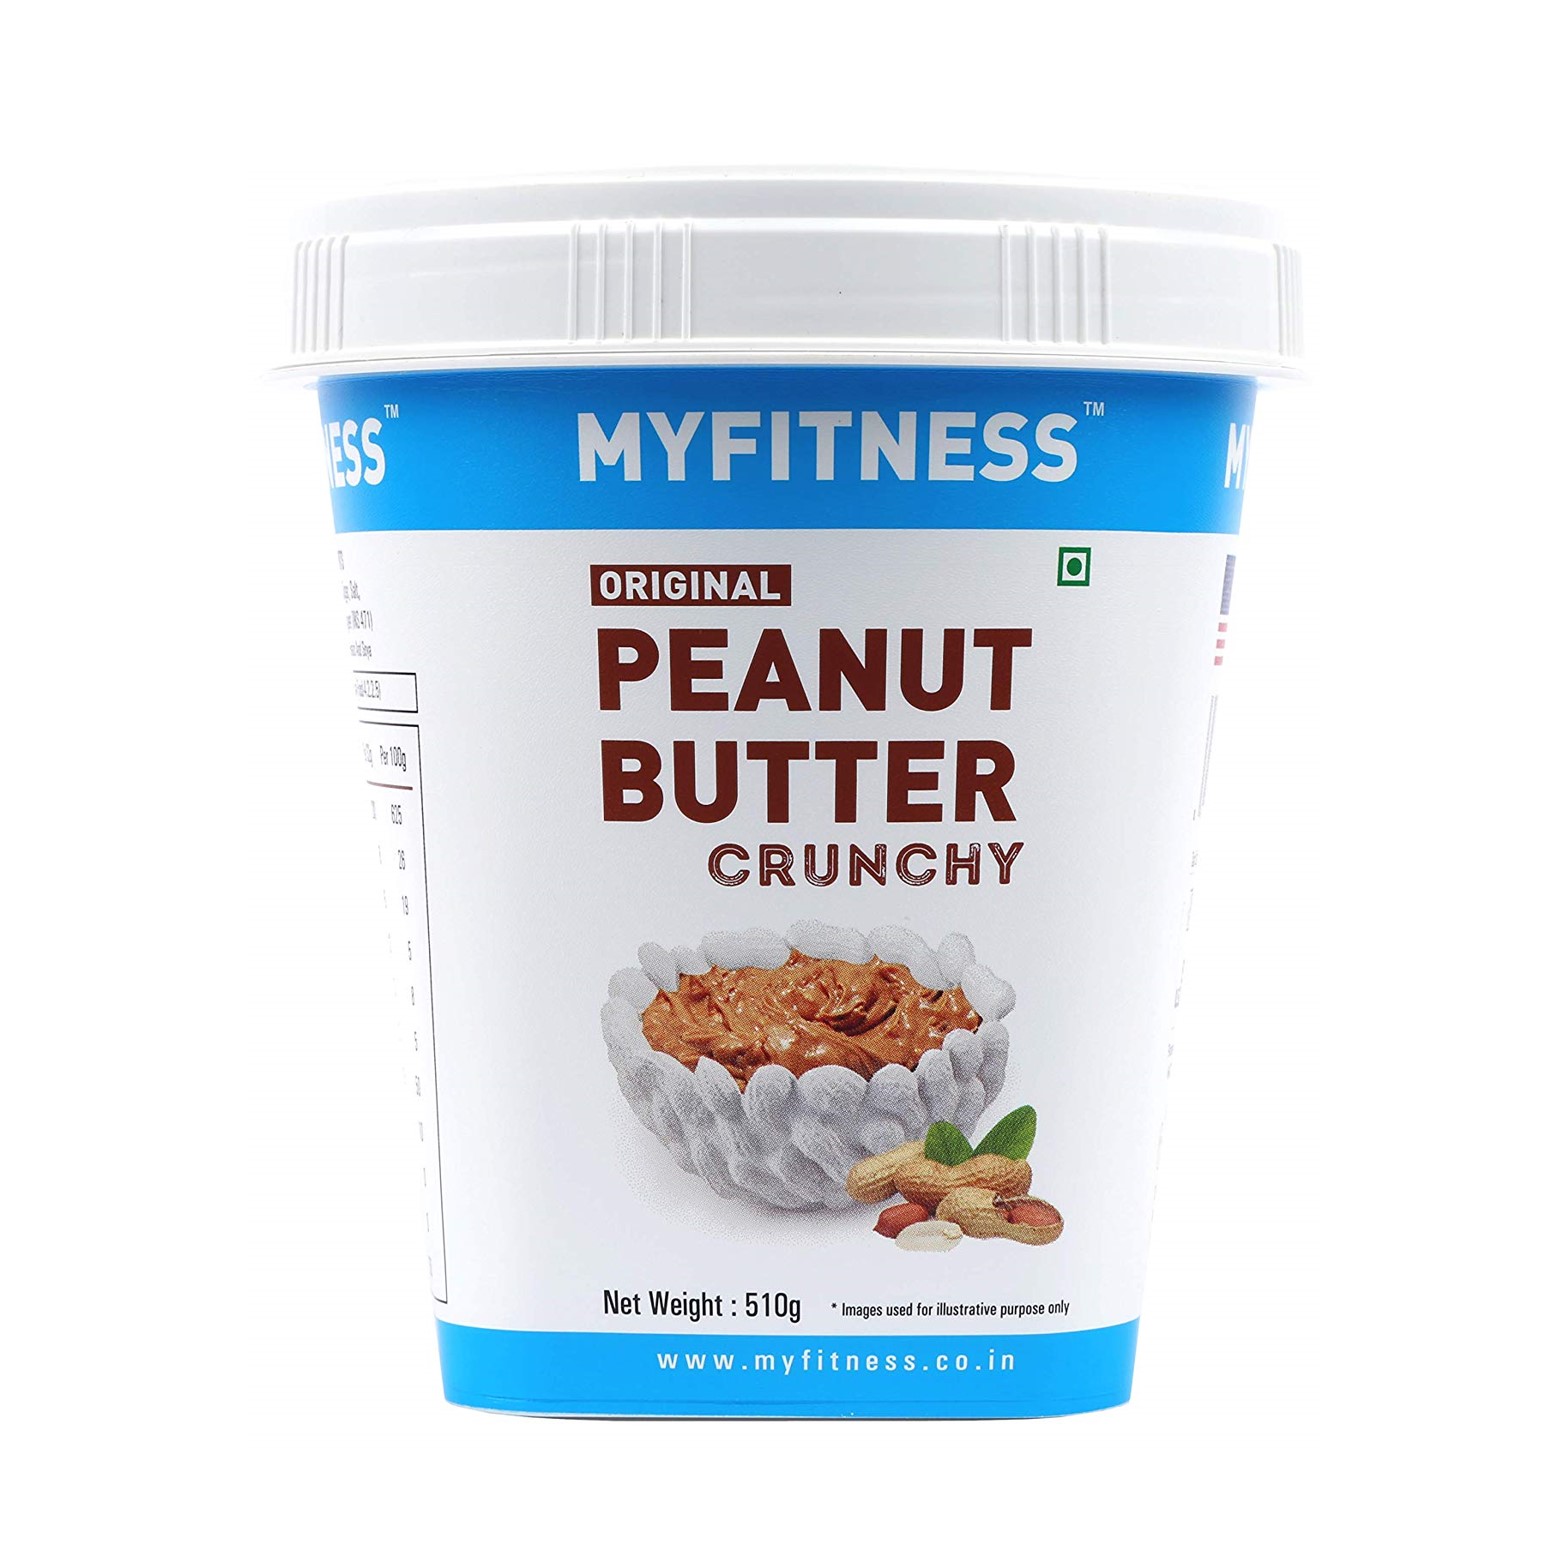 MYFITNESS Peanut Butter Crunchy 510g